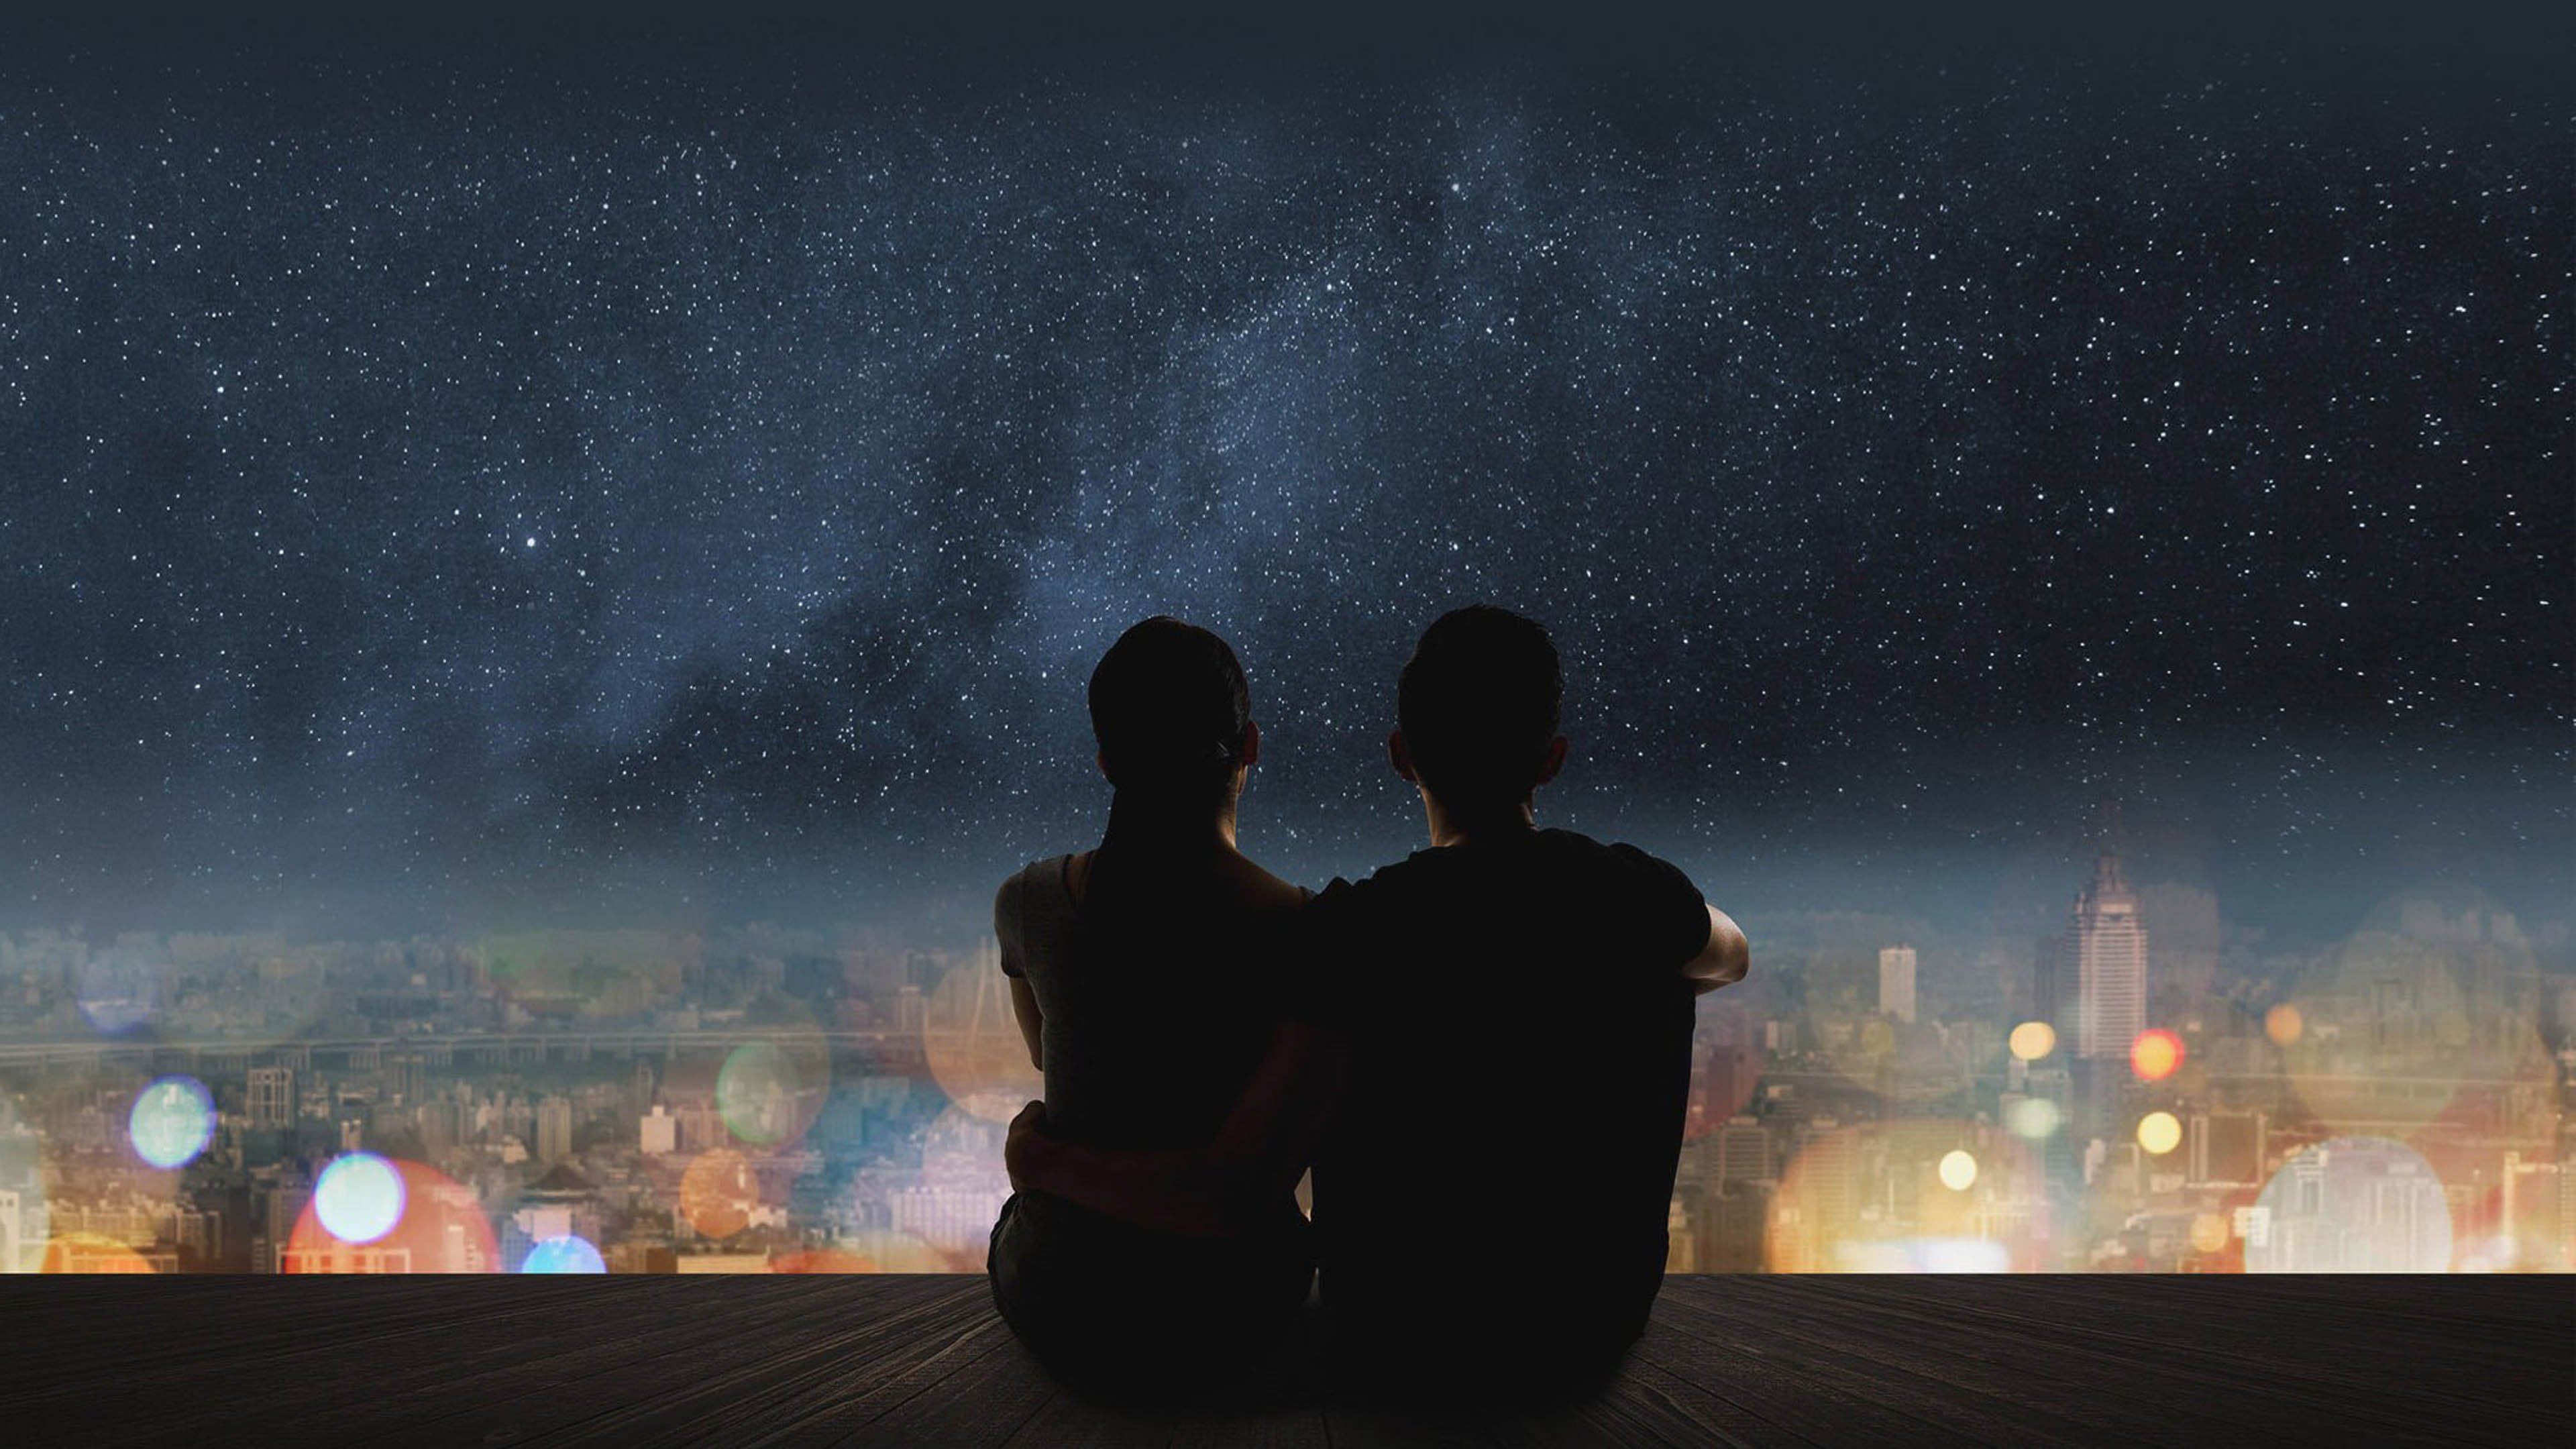 Вечер прощания. Пара на фоне ночного неба. Звездное небо и влюбленные. Пара на фоне ночи. Пара на фоне звездного неба.